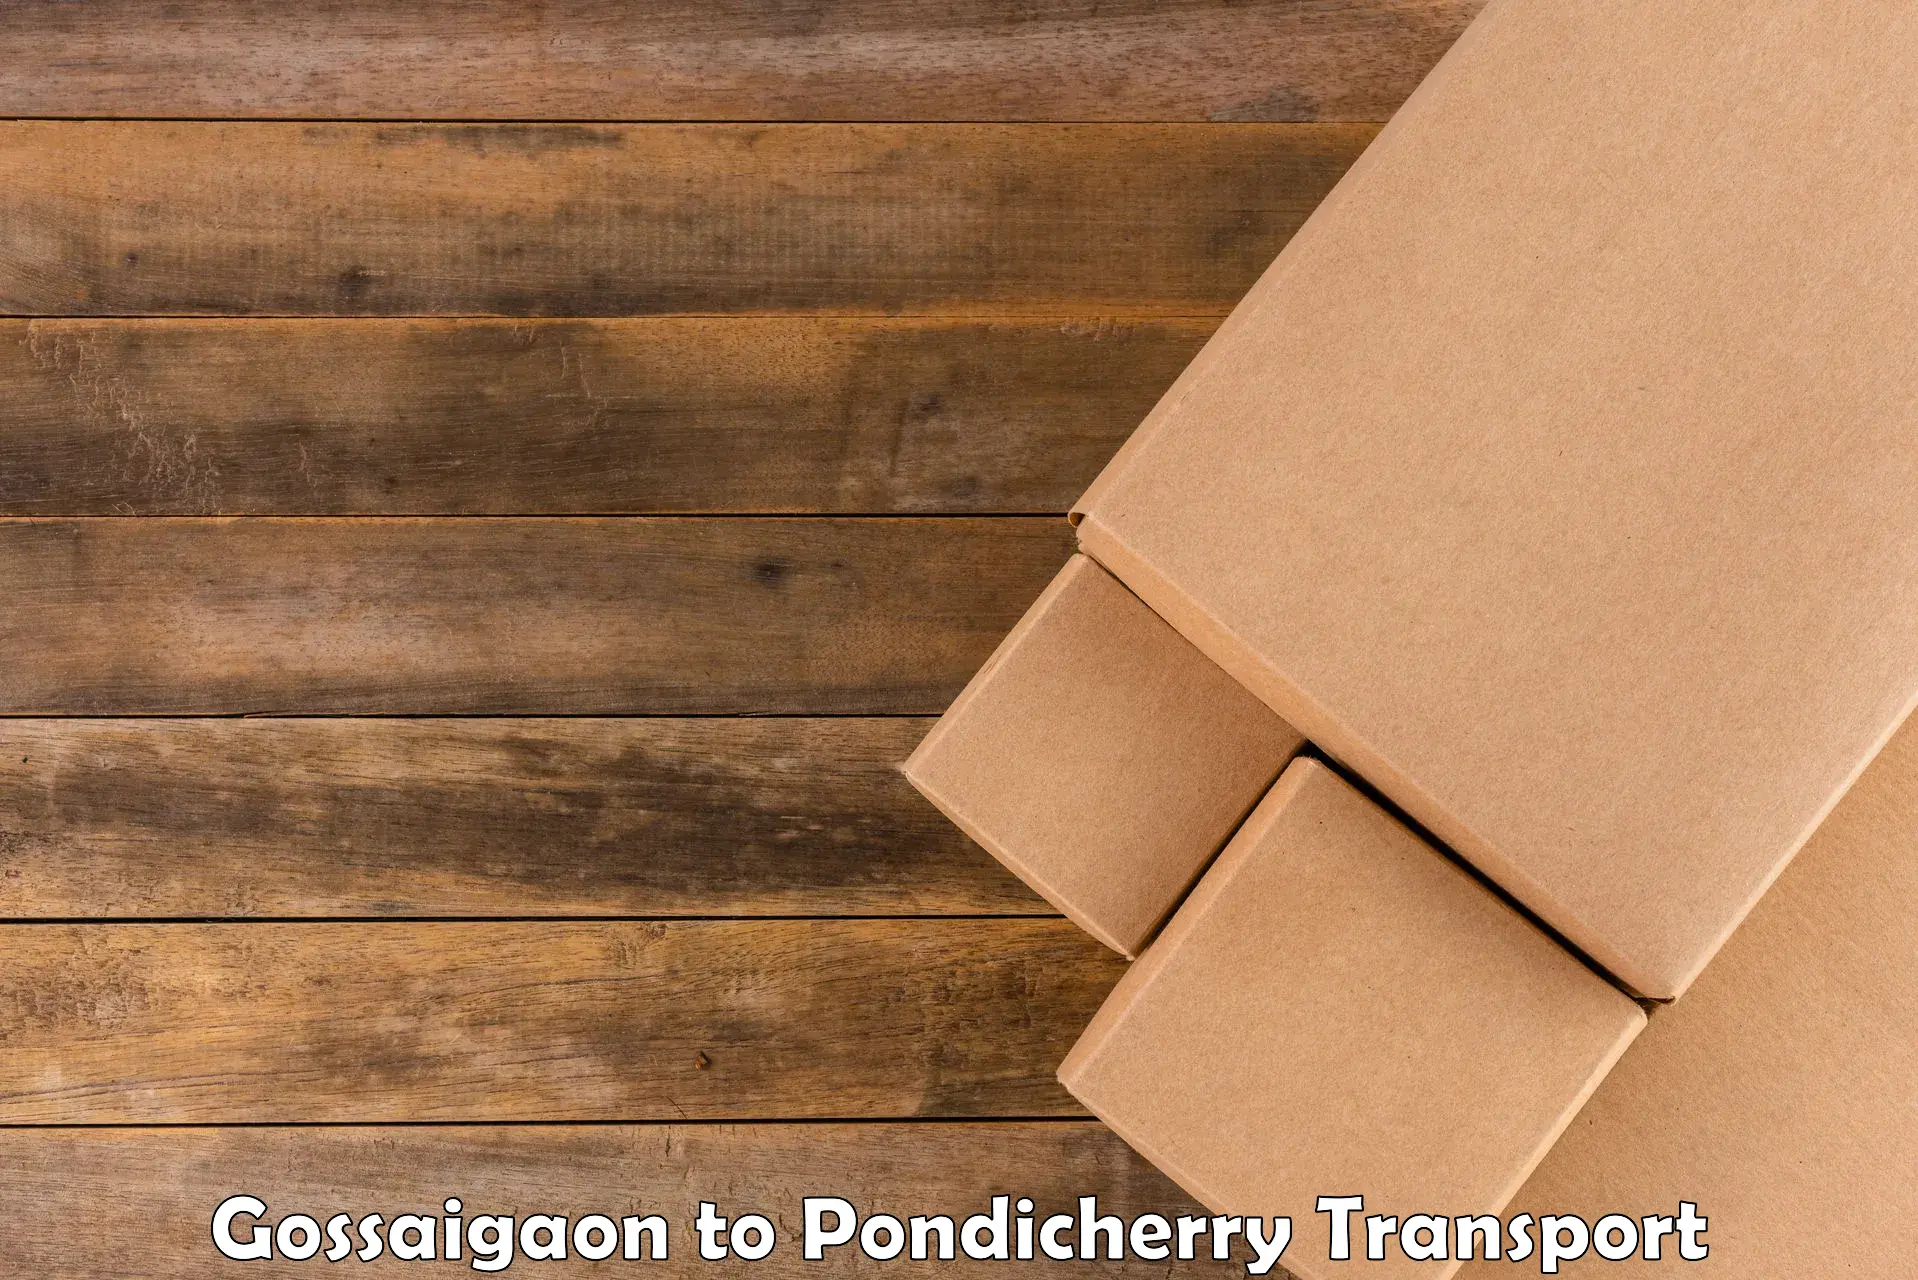 Cargo transport services Gossaigaon to Pondicherry